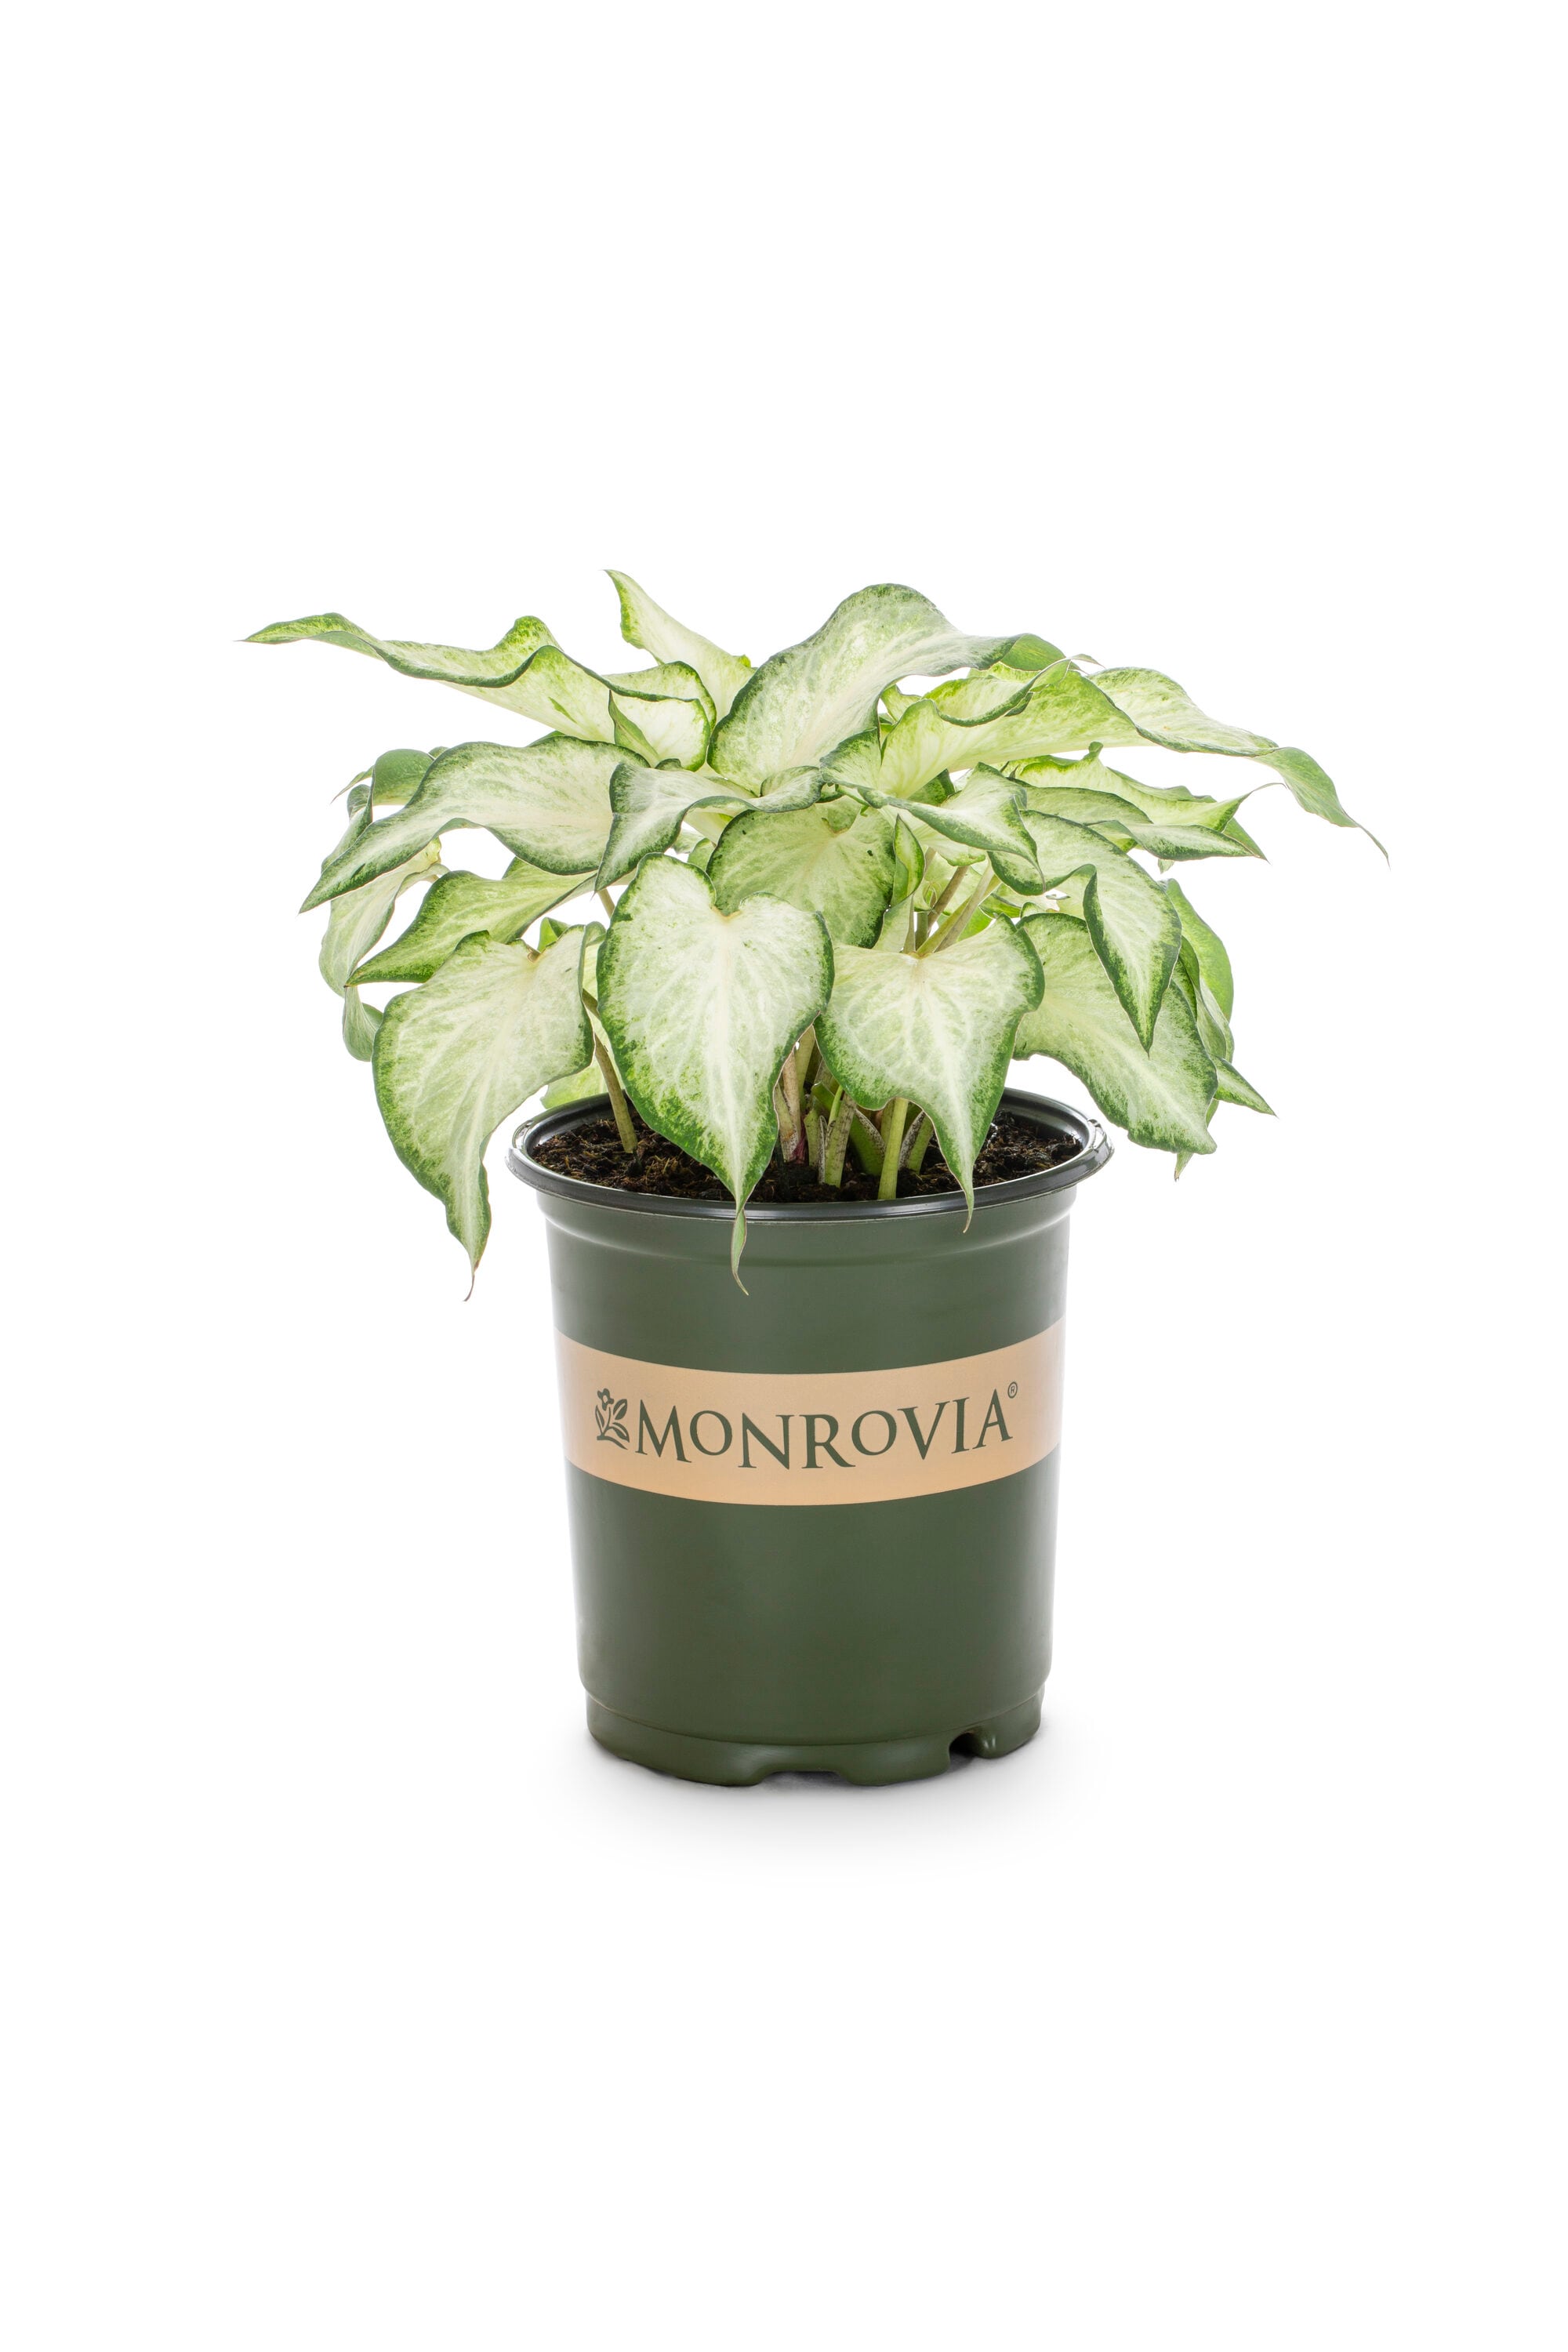 Monrovia Caladium in 2.5-Quart Pot 3-Pack in the Annuals department at ...